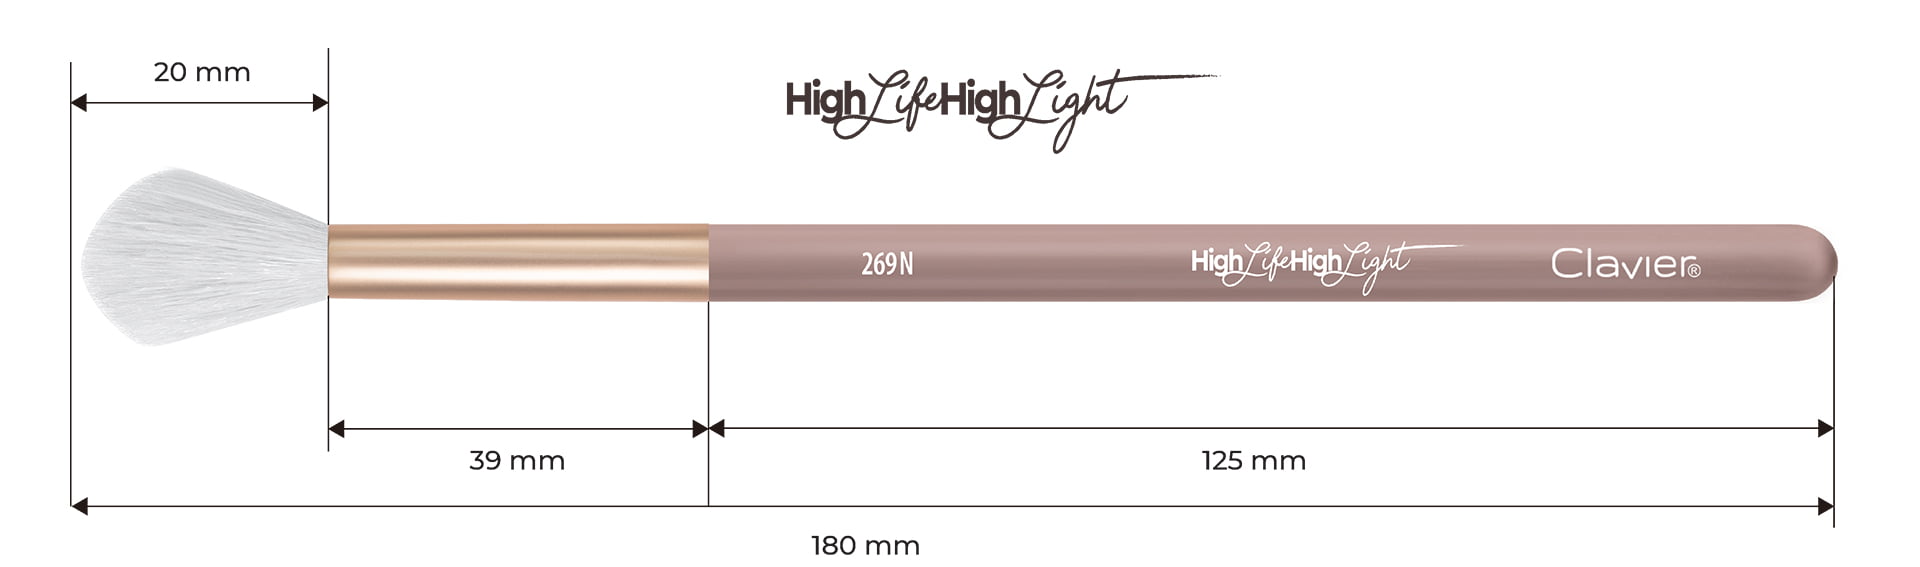 Pędzel do rozświetlania, blendowania, z włosia naturalnego - "HighLife-HighLight!" 269N - Clavier.pl